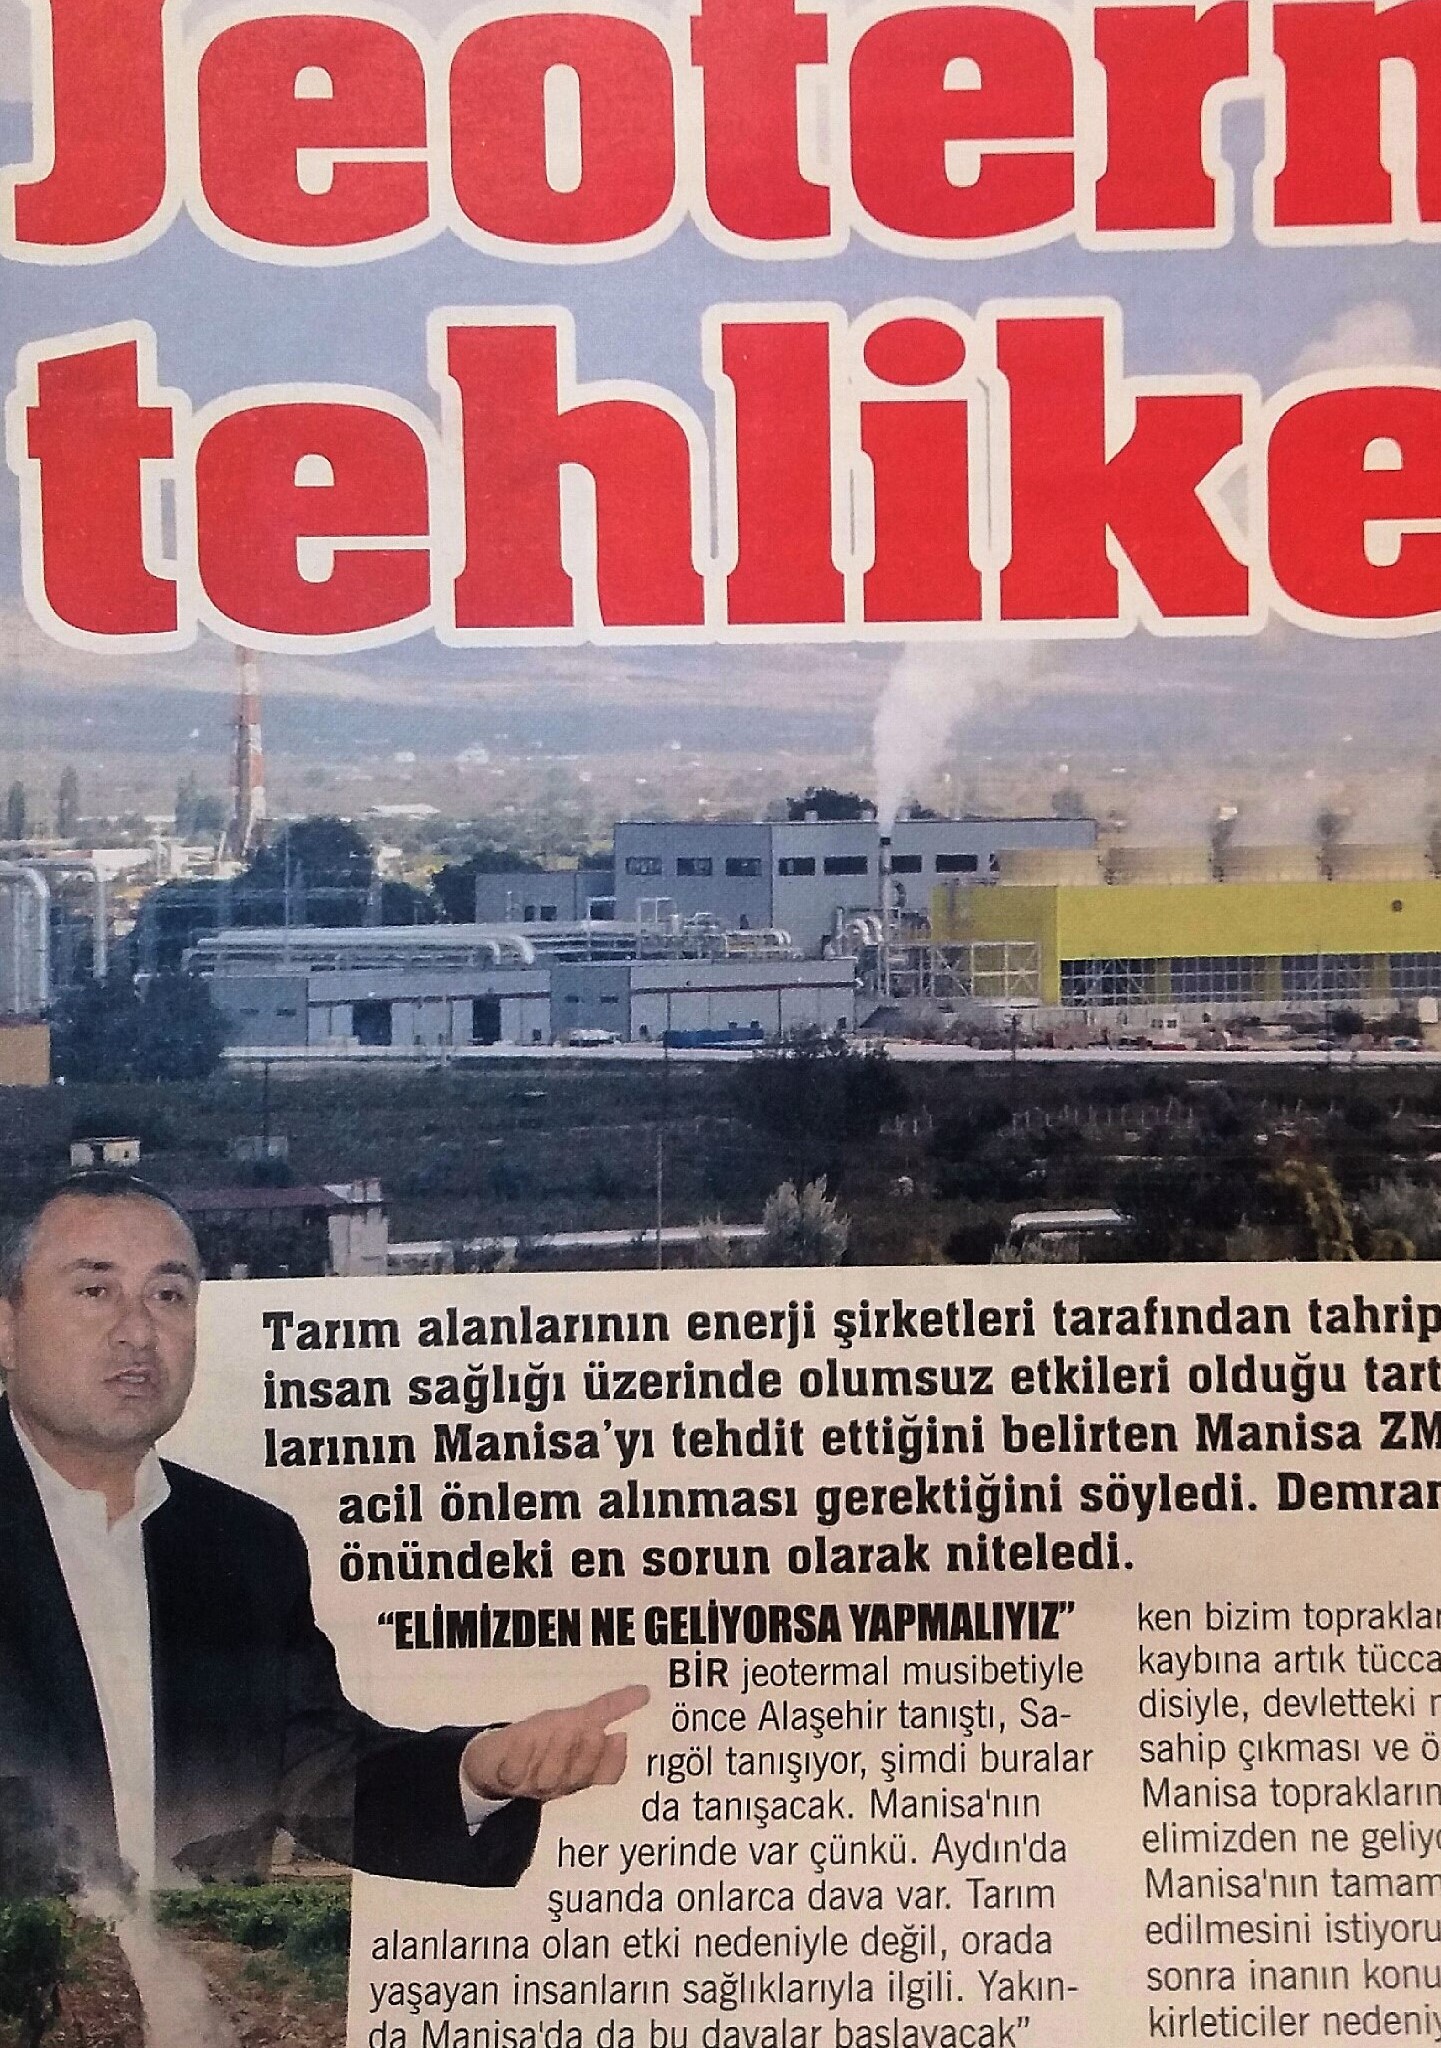 "JEOTERMAL TEHLİKESİ!"26.04.2017 "MANŞET GAZETESİ"